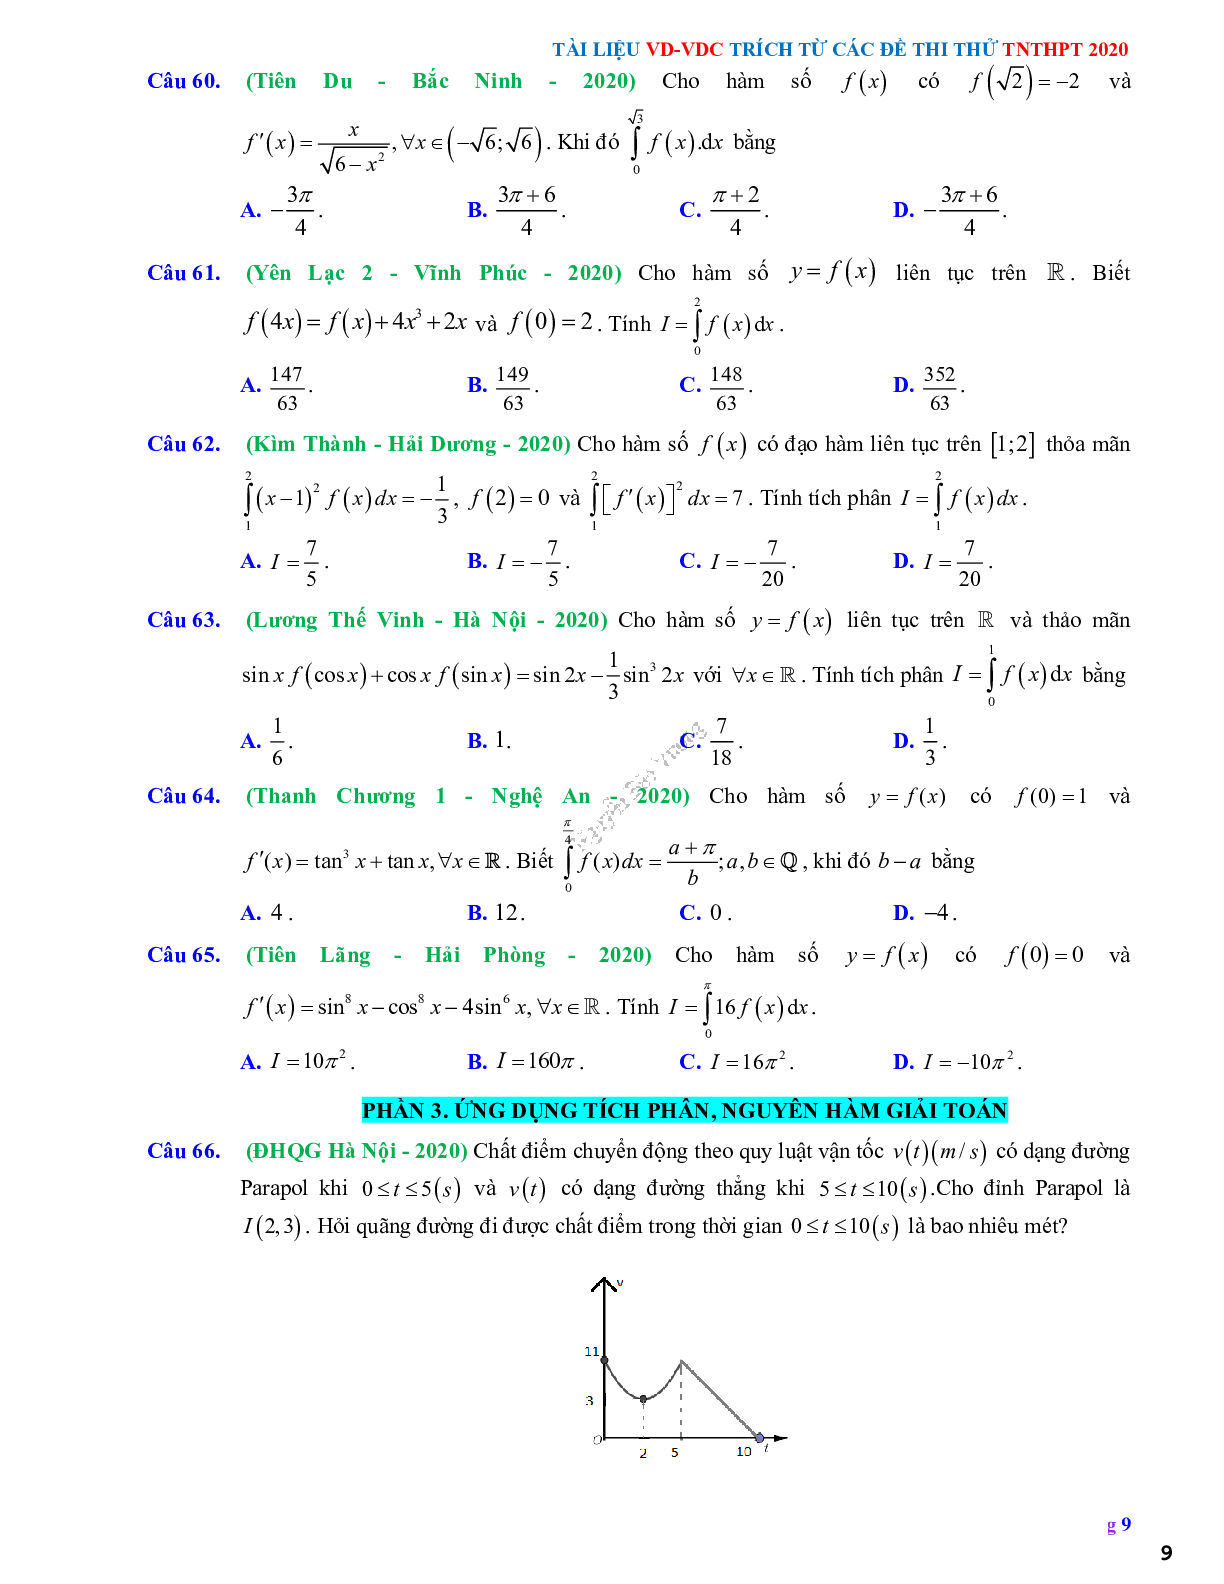 68 Bài tập vận dụng nguyên hàm tích phân và ứng dụng - có đáp án và lời giải (trang 9)